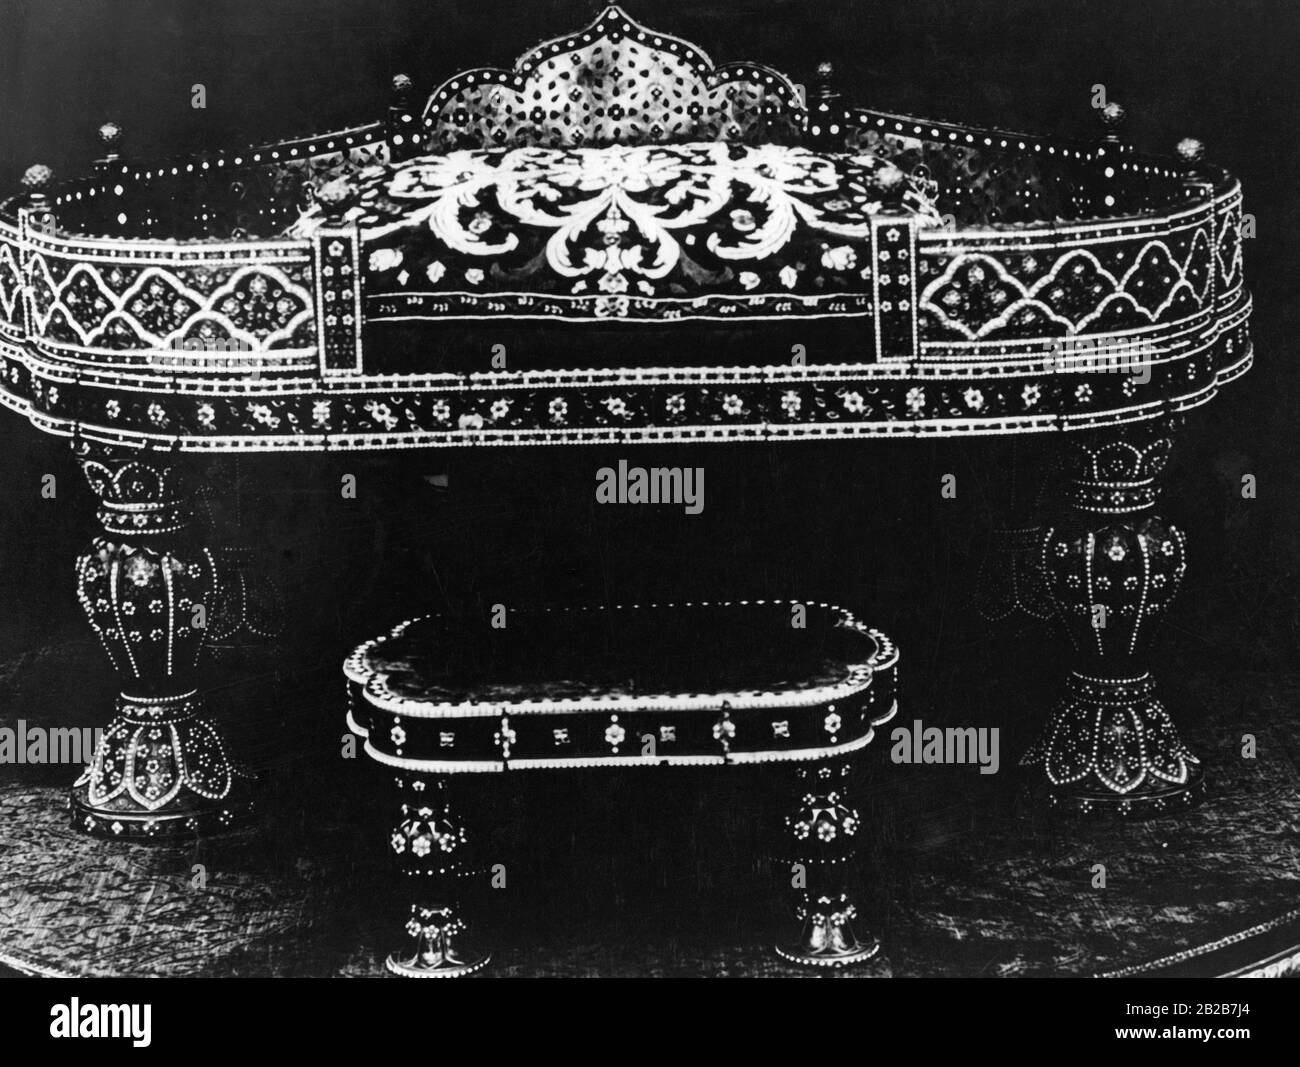 Ein berühmter persischer Thron in Form eines Klaviers, der von den Osmanen in einem der Kriege gegen Persien gestohlen wurde. Es ist jetzt auf einer öffentlichen Ausstellung im Topkapi-Palast in Istanbul zu sehen. Undatiertes Foto. Stockfoto